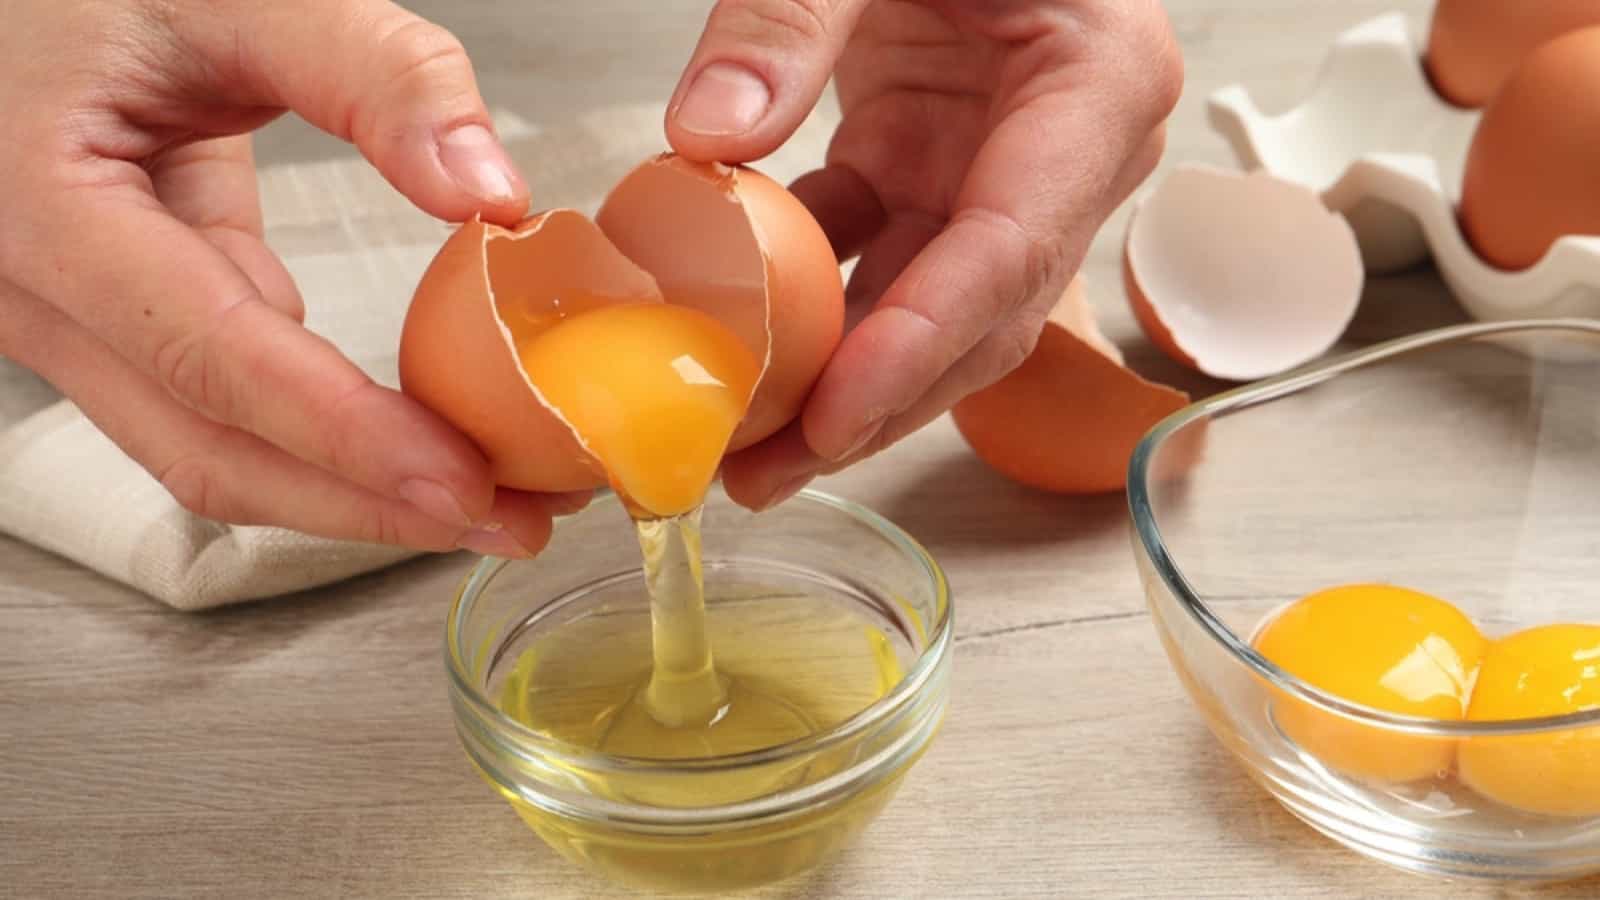 یک نفر تخم مرغ را در یک لیوان روغن می ریزد.